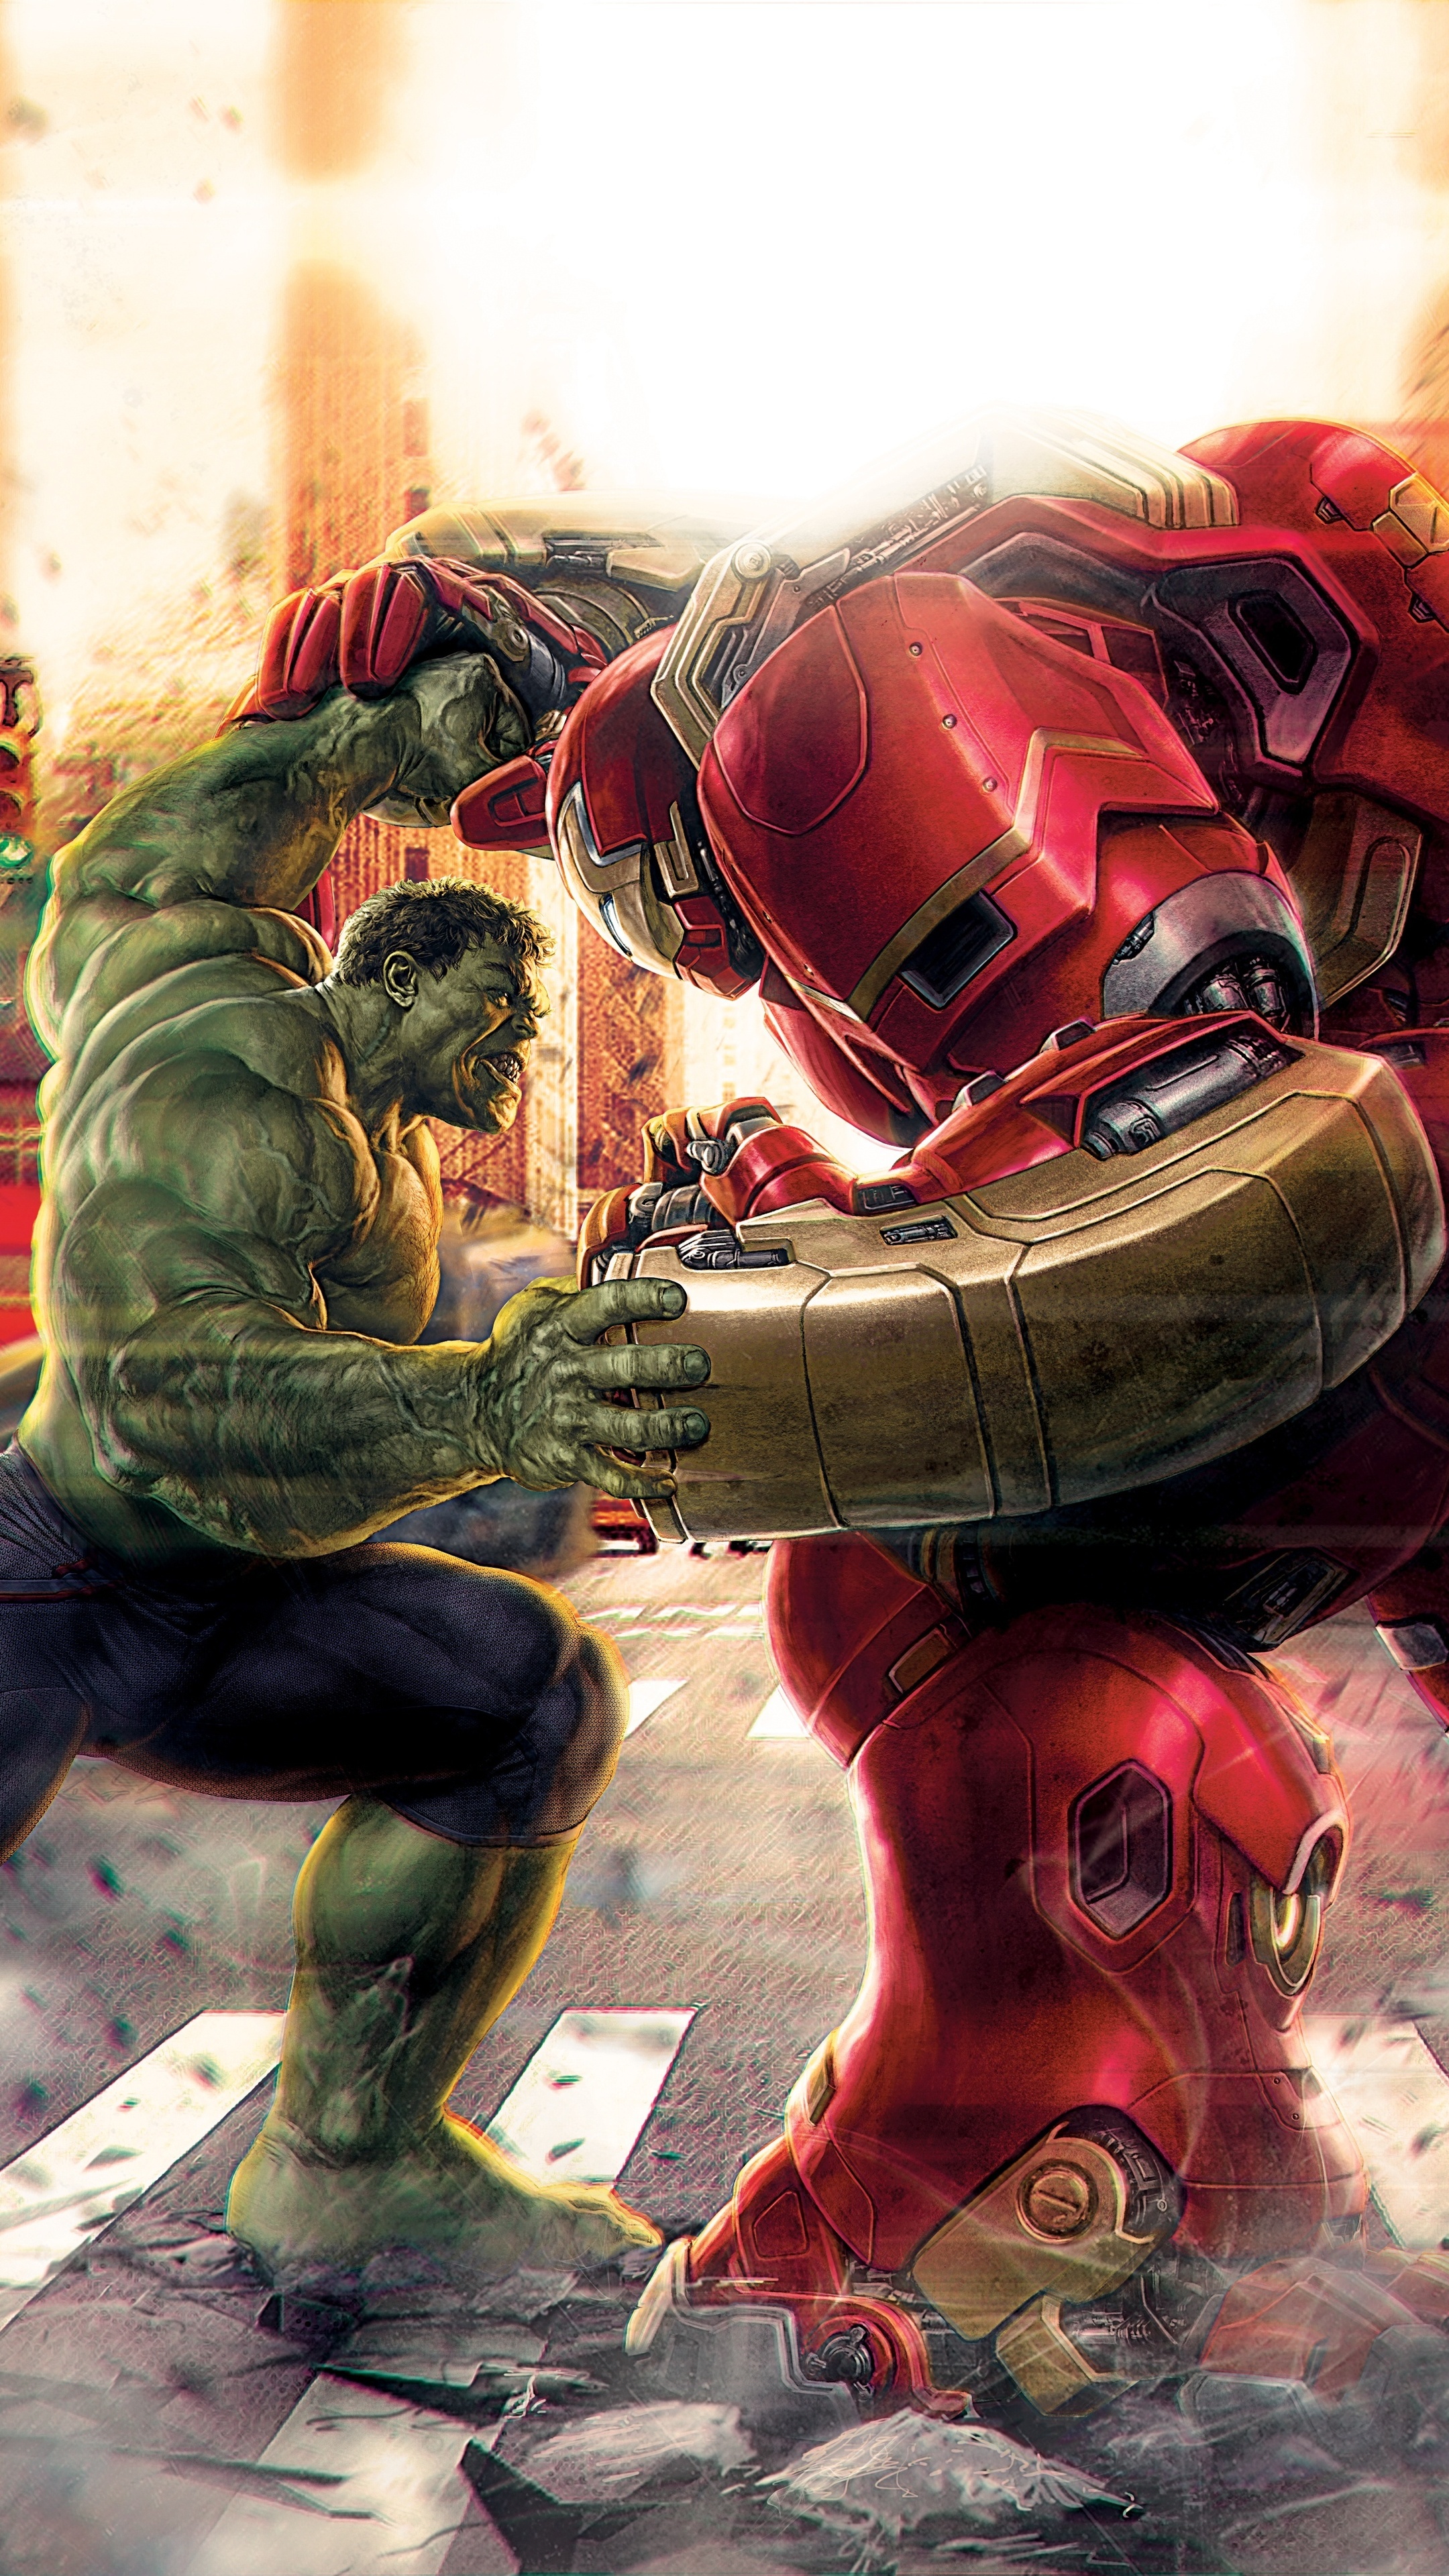 Hulk vs Hulkbuster, Artwork battle, Premium wallpapers, 4k images, 2160x3840 4K Phone